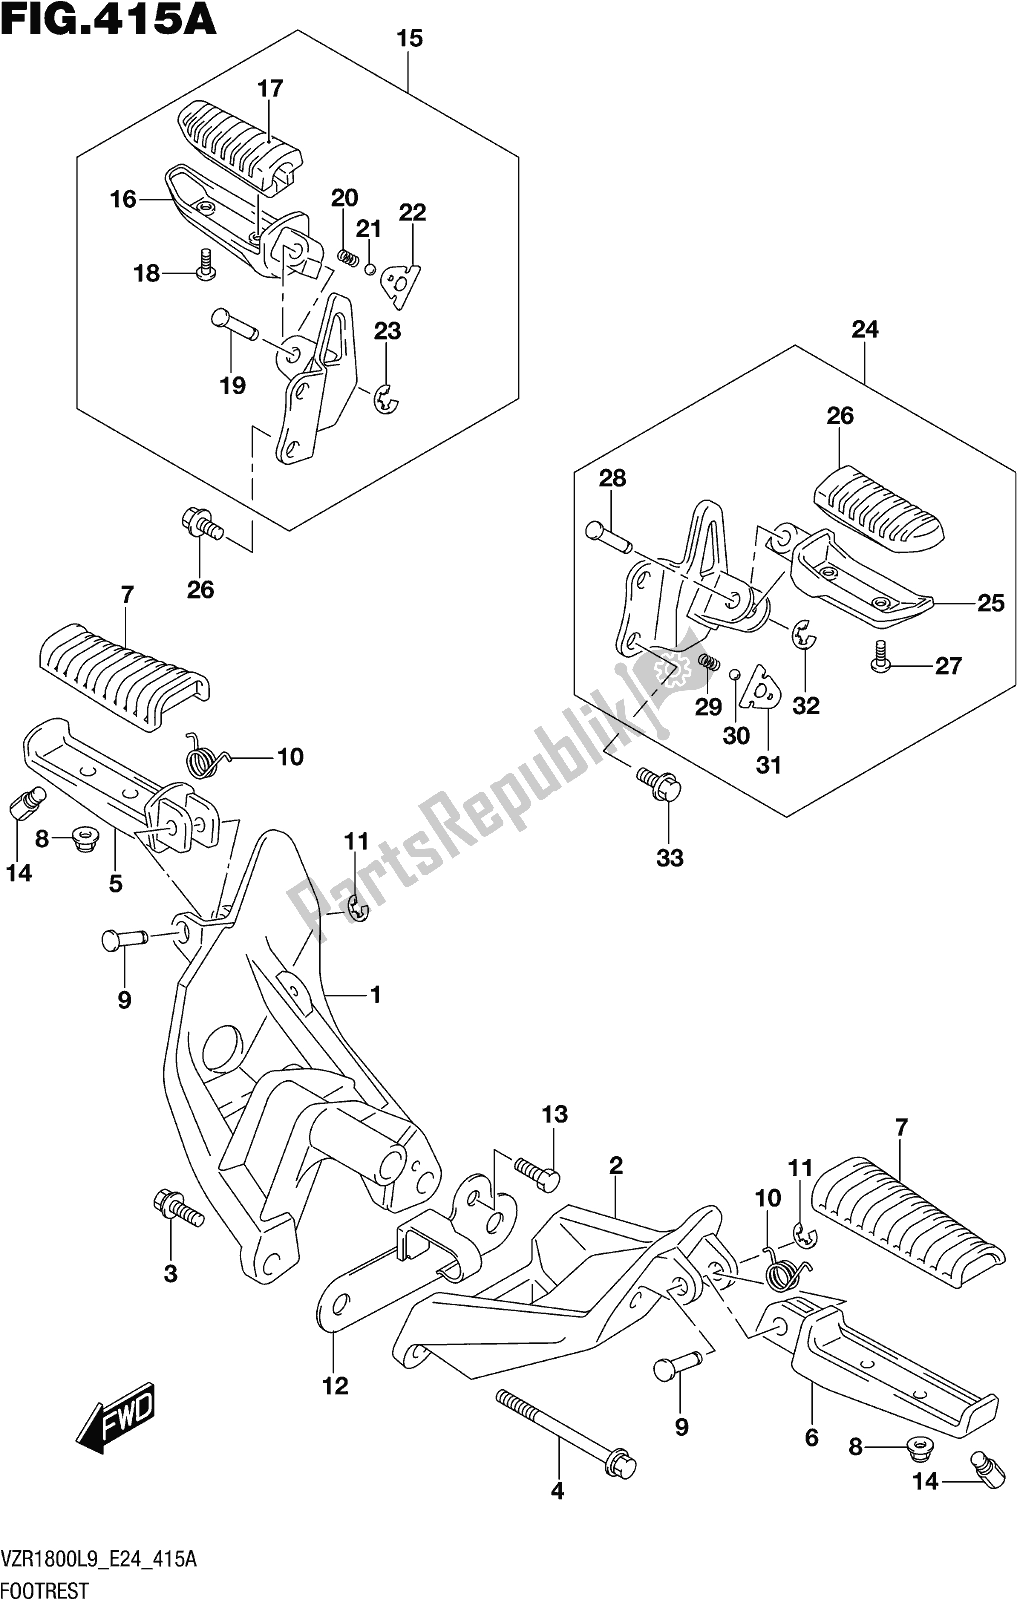 Alle onderdelen voor de Fig. 415a Footrest van de Suzuki VZR 1800 2019